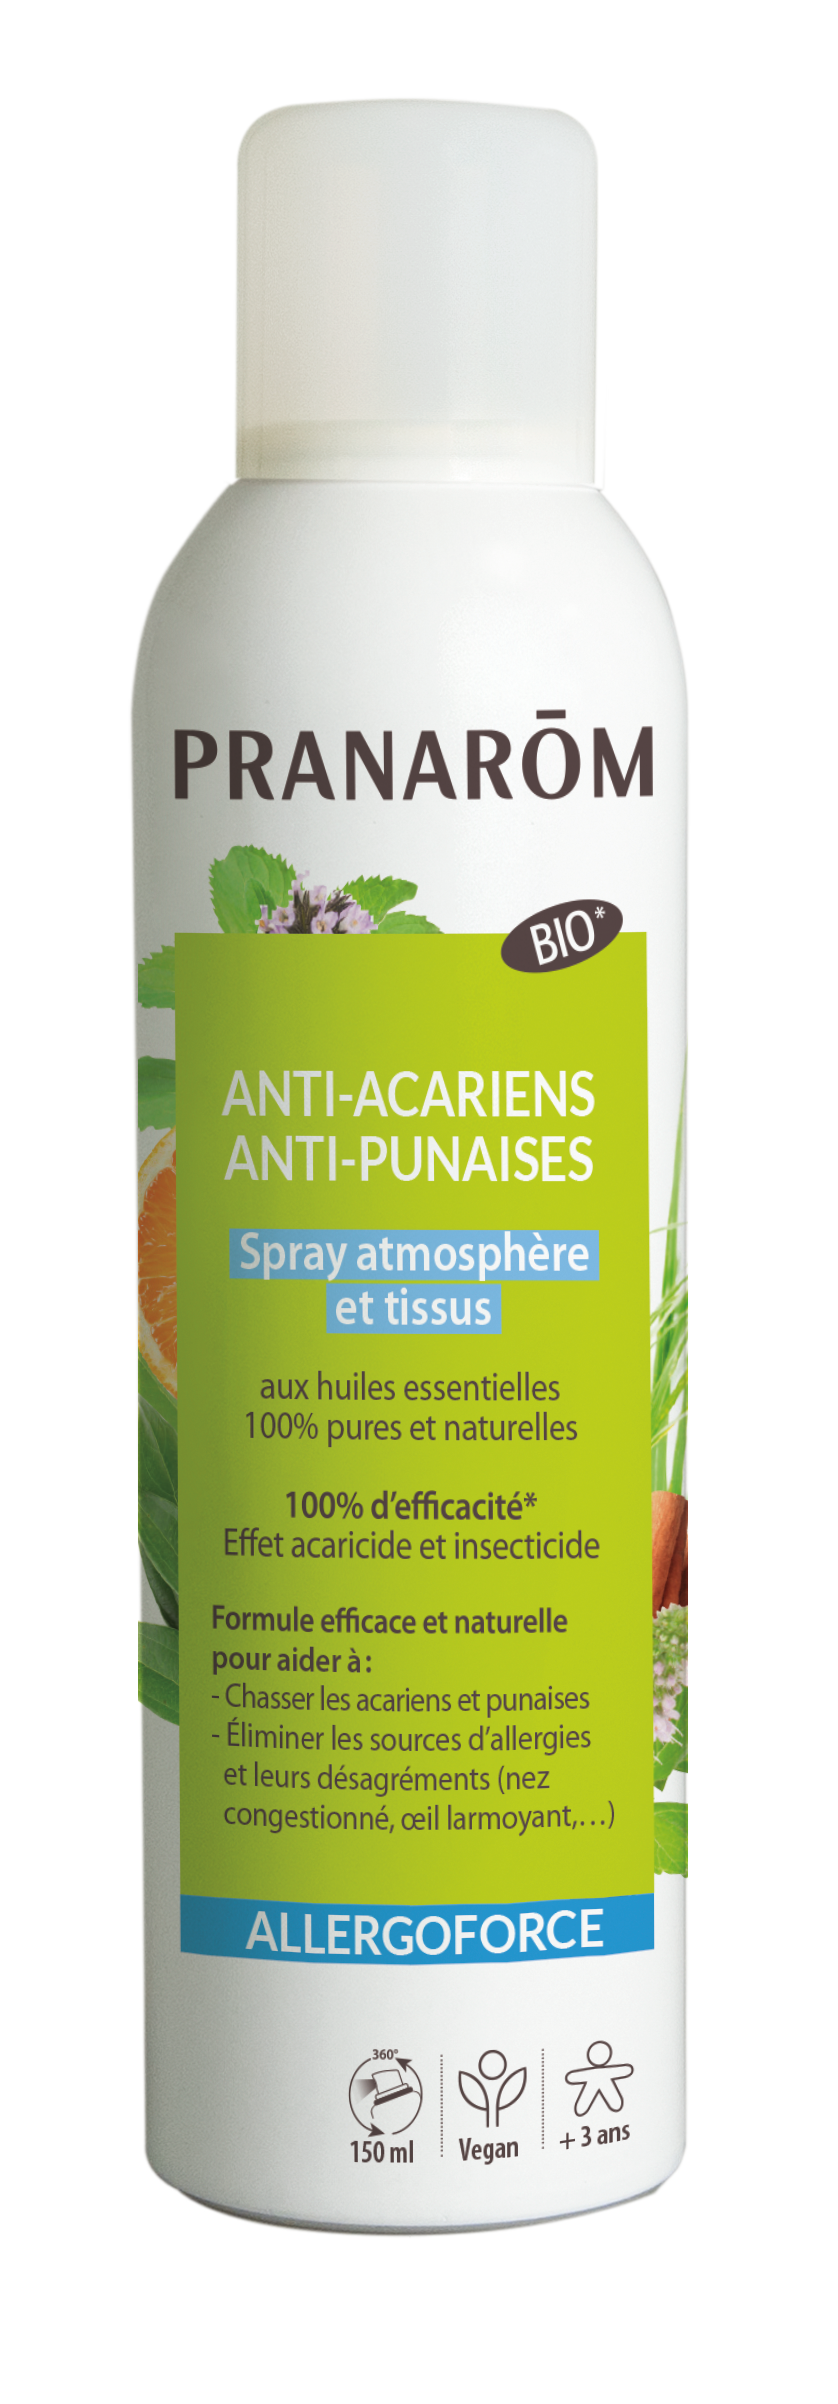 Pranarom Allergoforce Spray Anti-Acariens Anti-Punaises